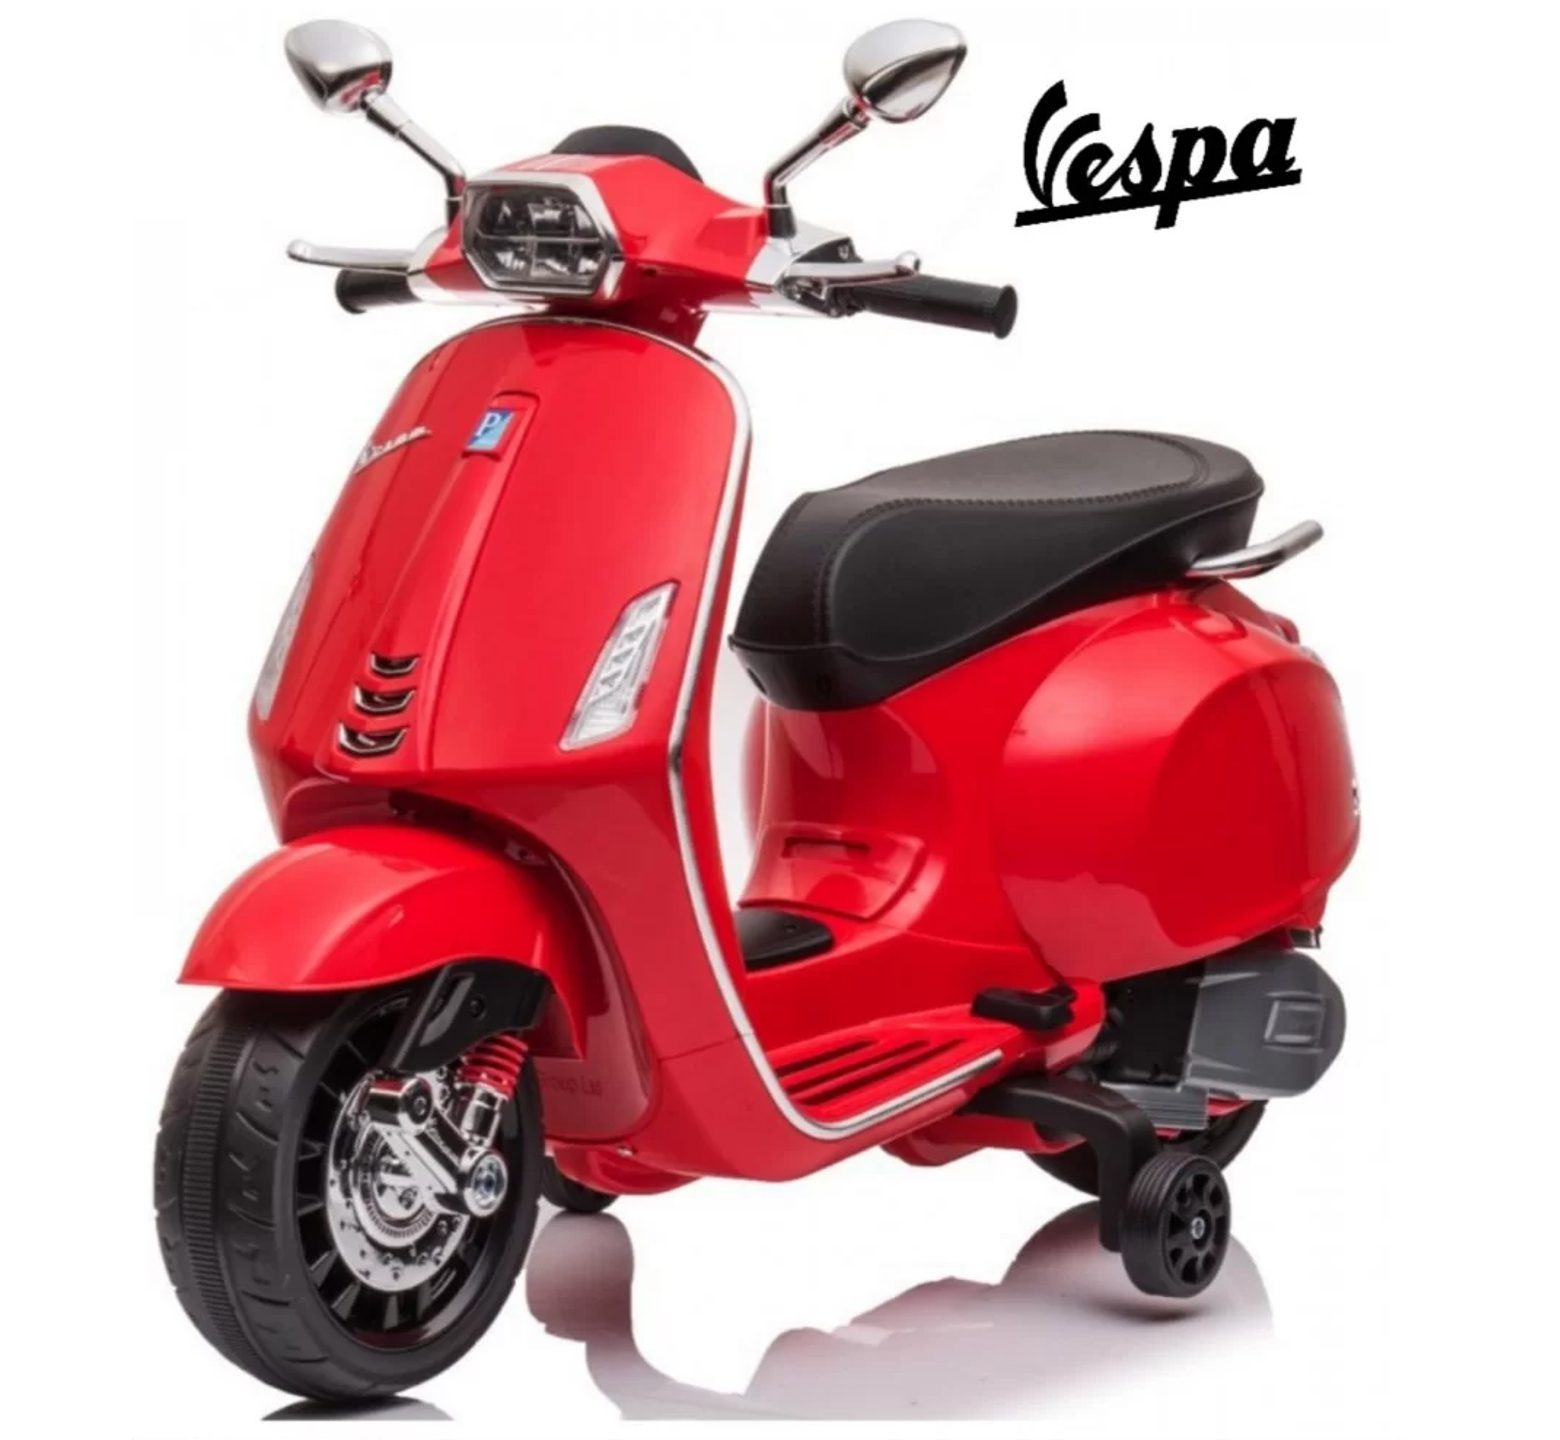 Ηλεκτροκίνητη Παιδική Μηχανή Licensed Vespa Piaggio 12V σε Κόκκινο Χρώμα